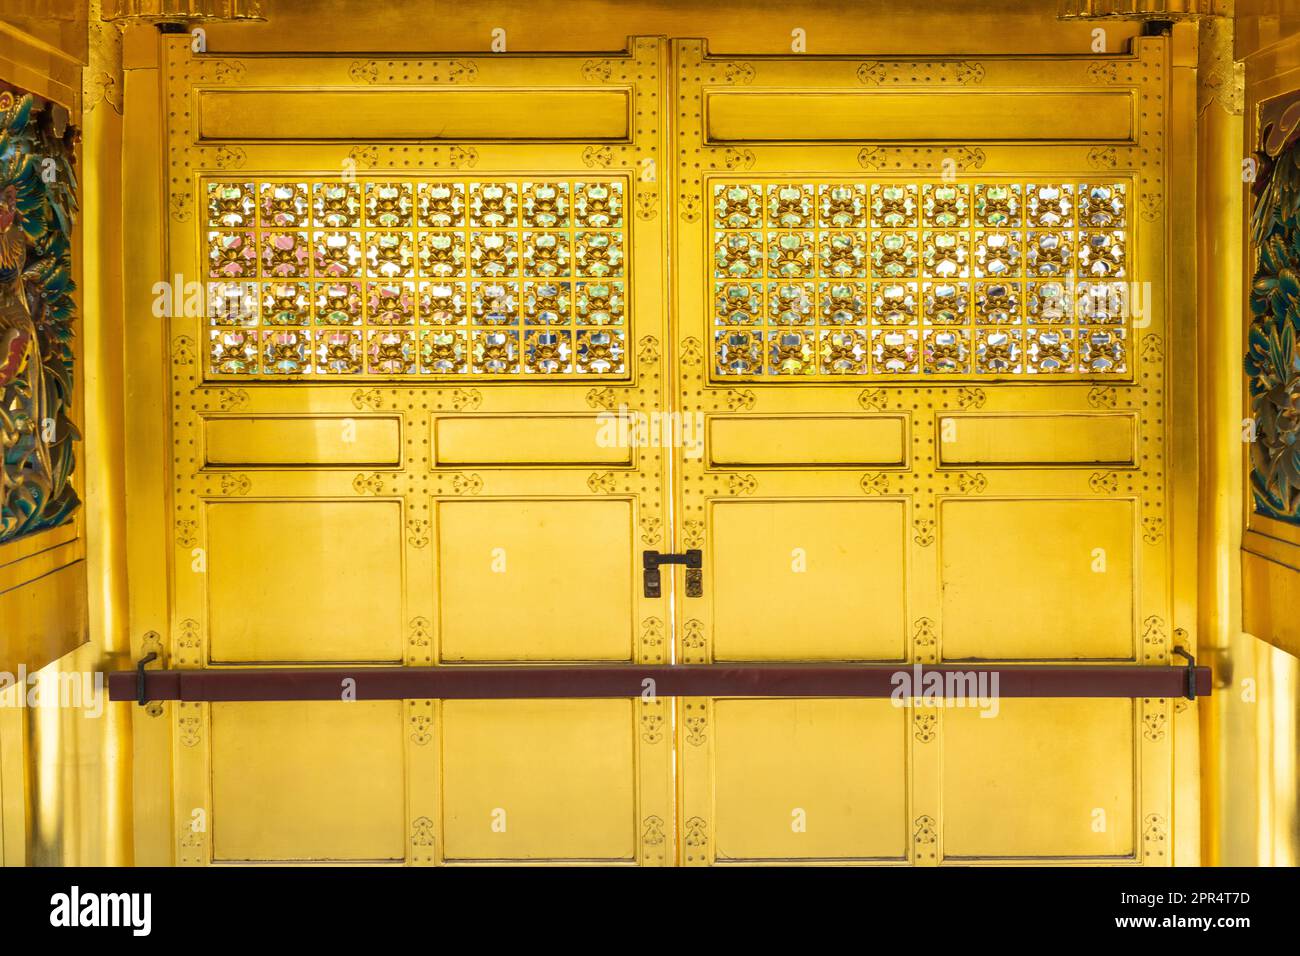 La porte intérieure ornée de Karamon doré au sanctuaire Ueno Tosho-gu dans le parc Ueno, Tokyo, Japon. Le sanctuaire a été construit en 1627 et est considéré comme un grand exemple de l'architecture de Shinto de la période Edo. Banque D'Images